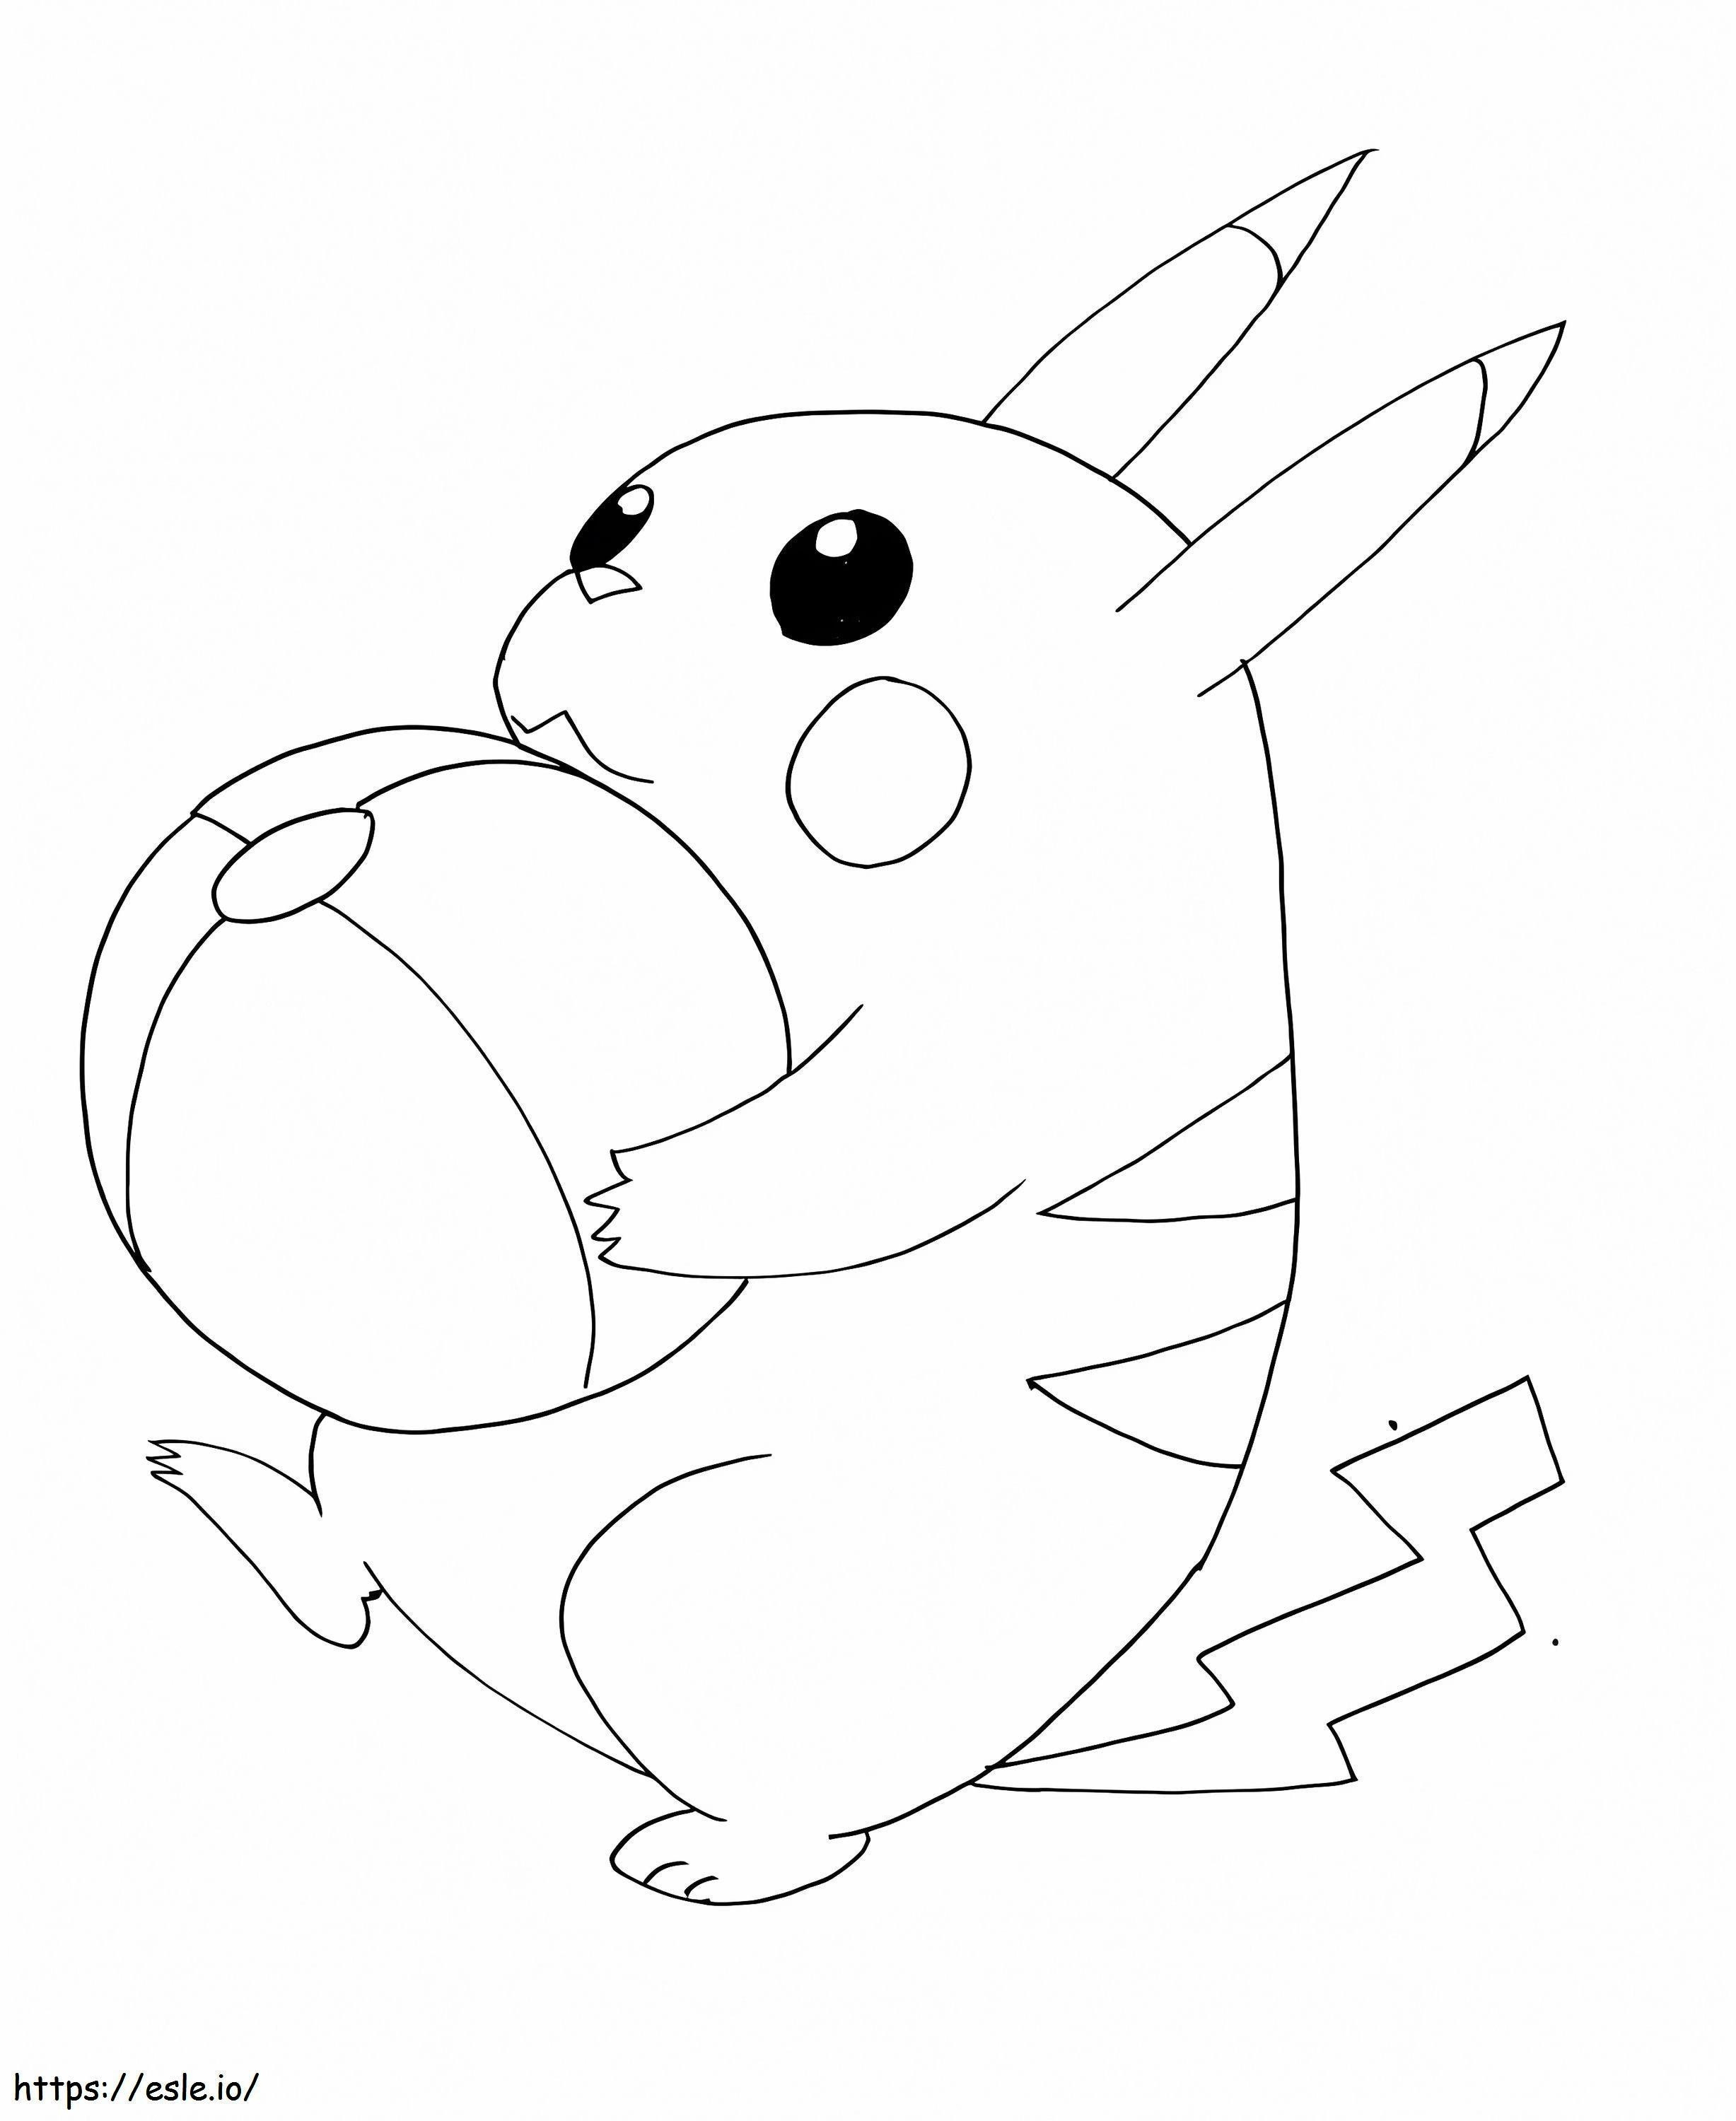 Pikachu com uma bola para colorir